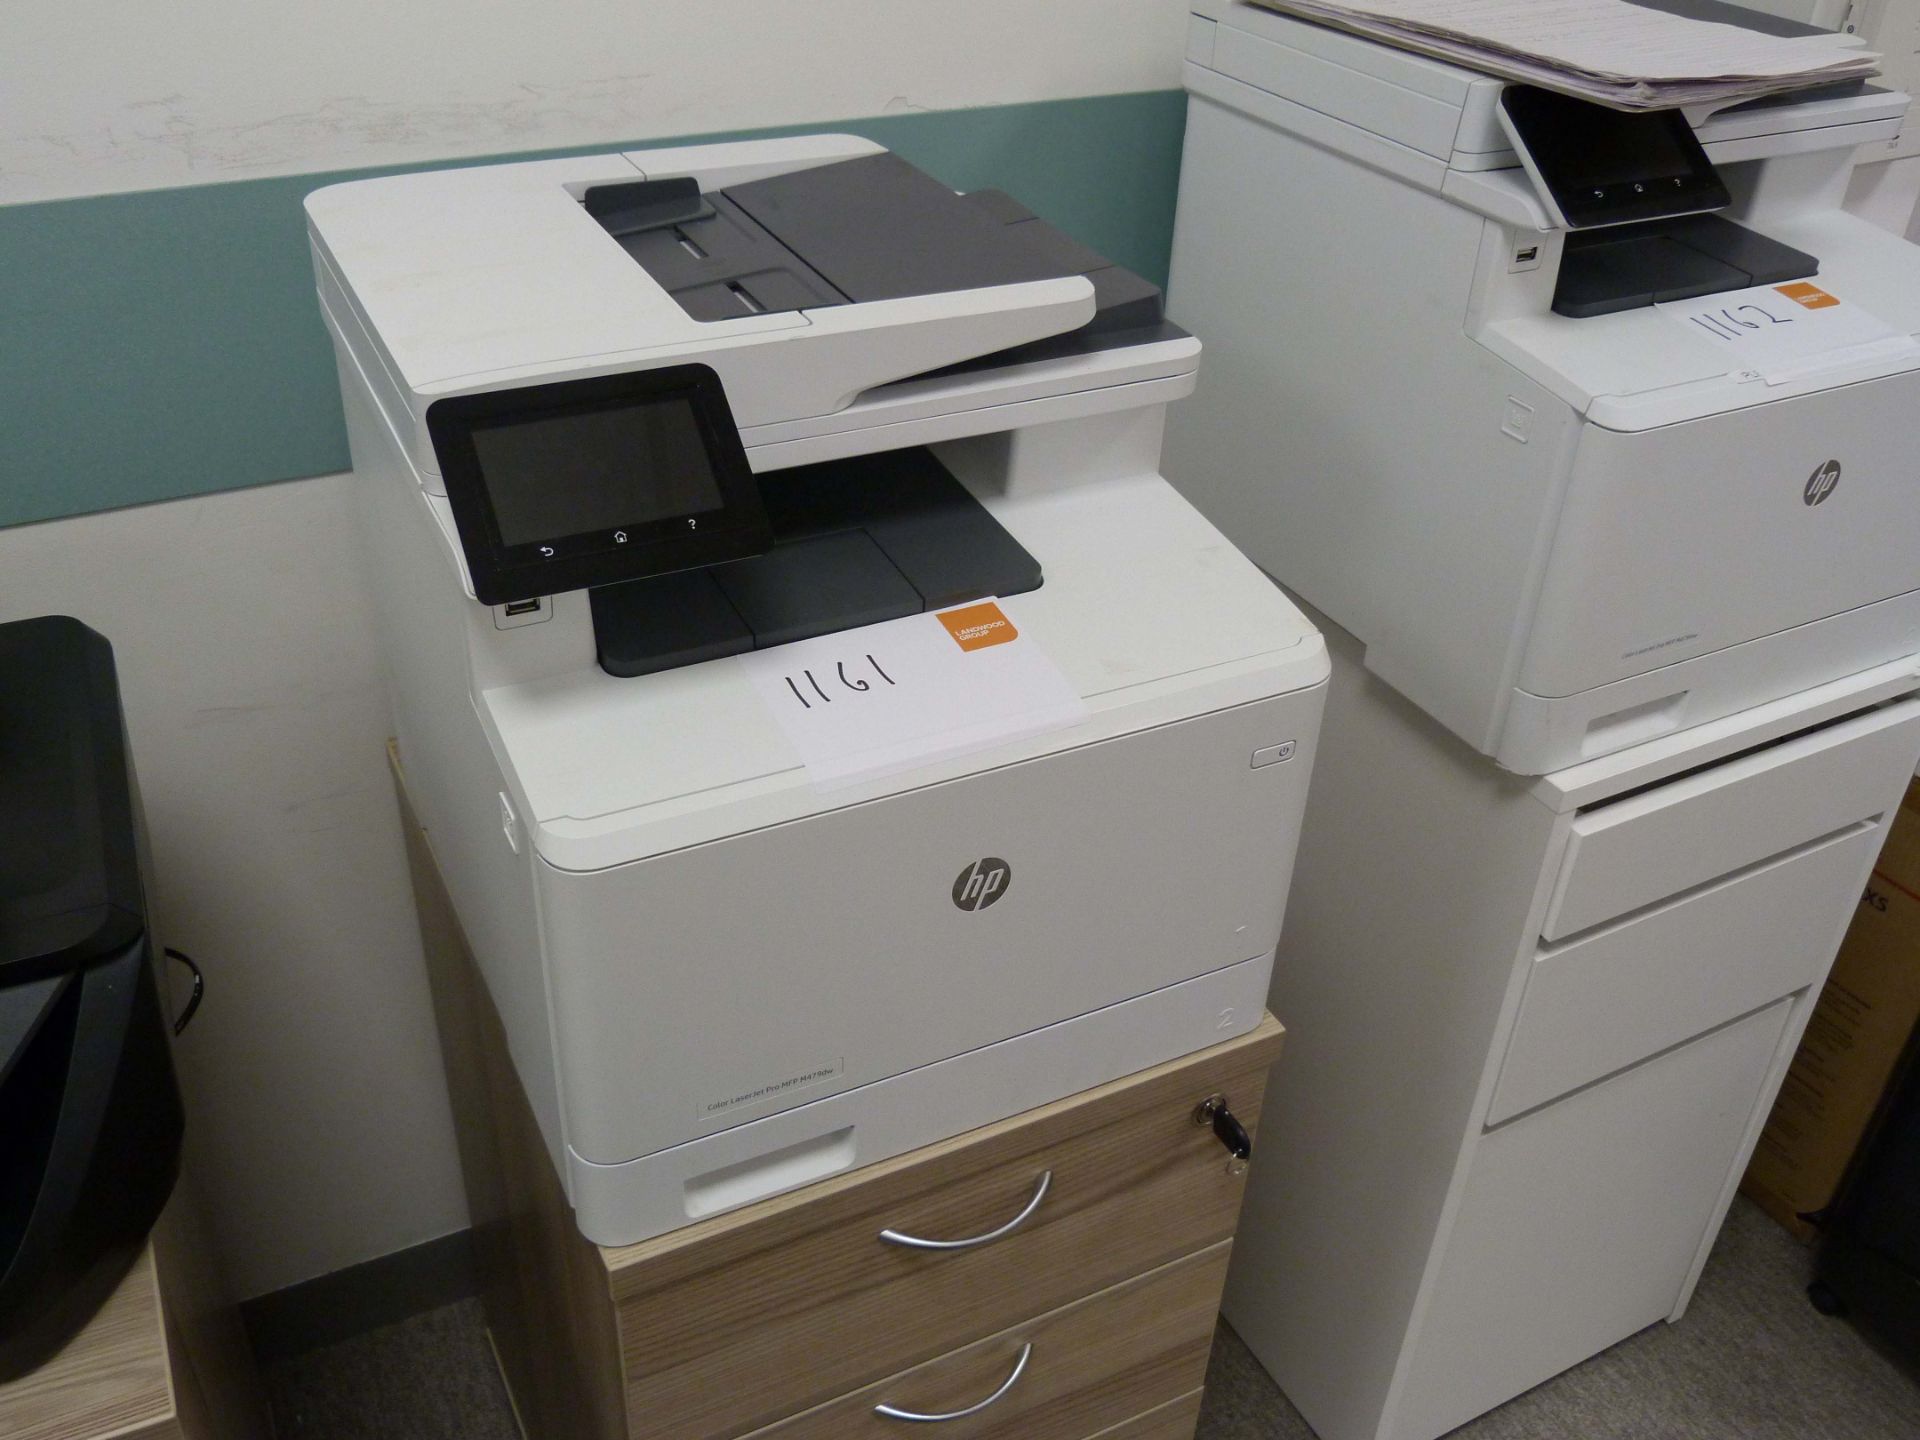 A HP Office LaserJet Pro MFP479dw Multi Function Printer.